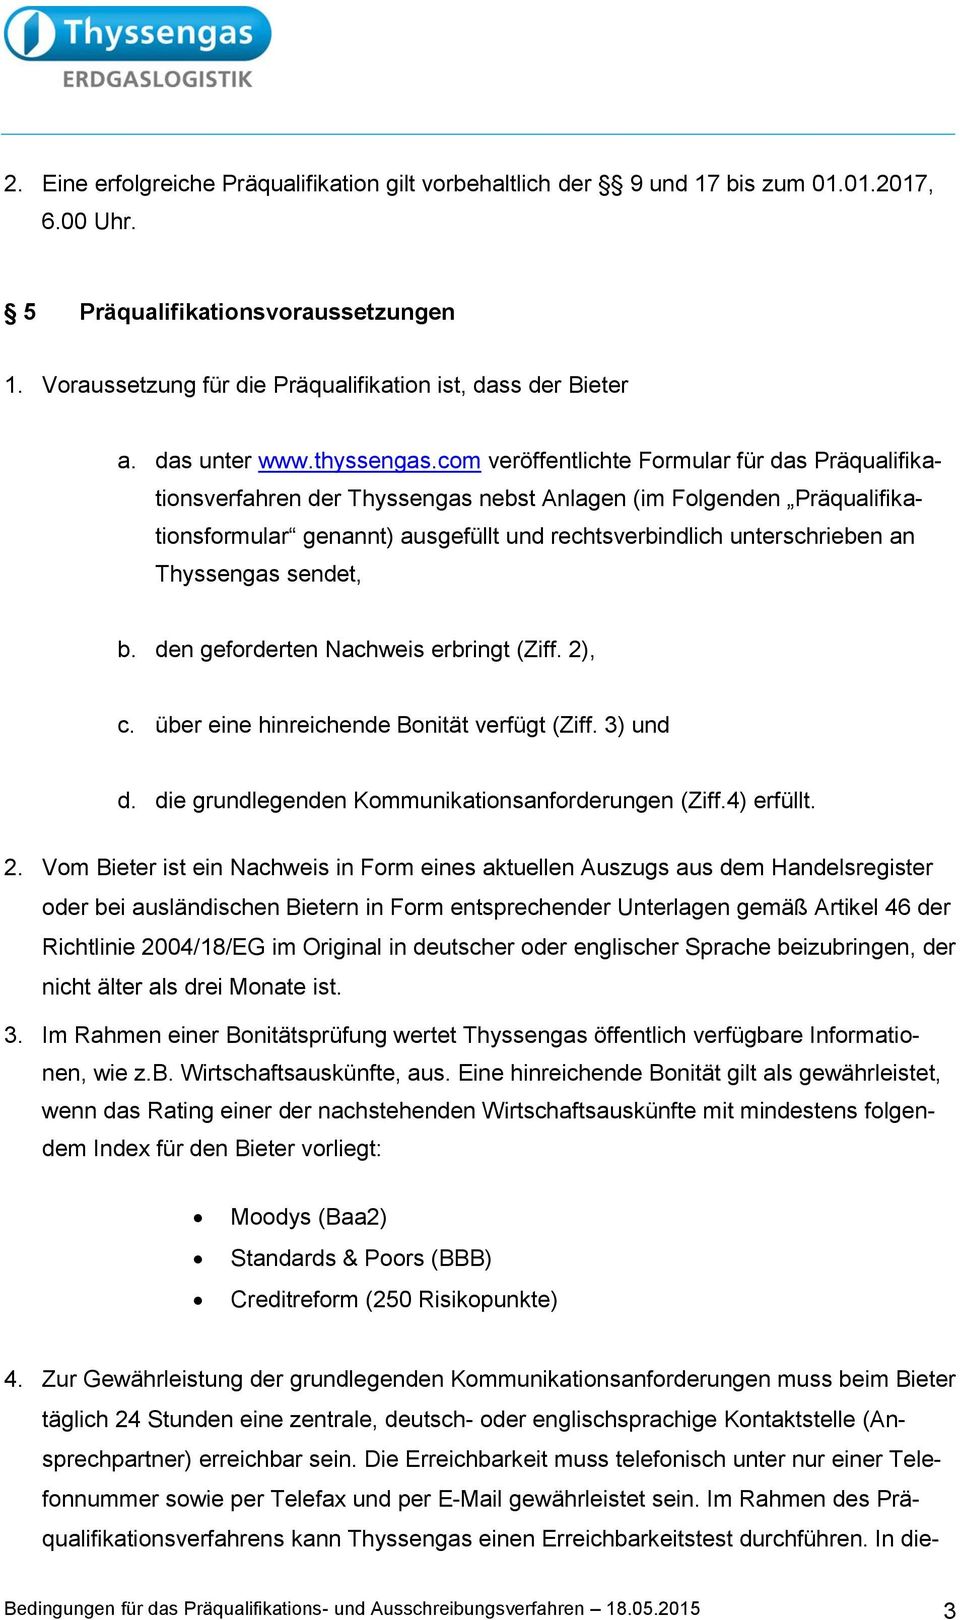 com veröffentlichte Formular für das Präqualifikationsverfahren der Thyssengas nebst Anlagen (im Folgenden Präqualifikationsformular genannt) ausgefüllt und rechtsverbindlich unterschrieben an